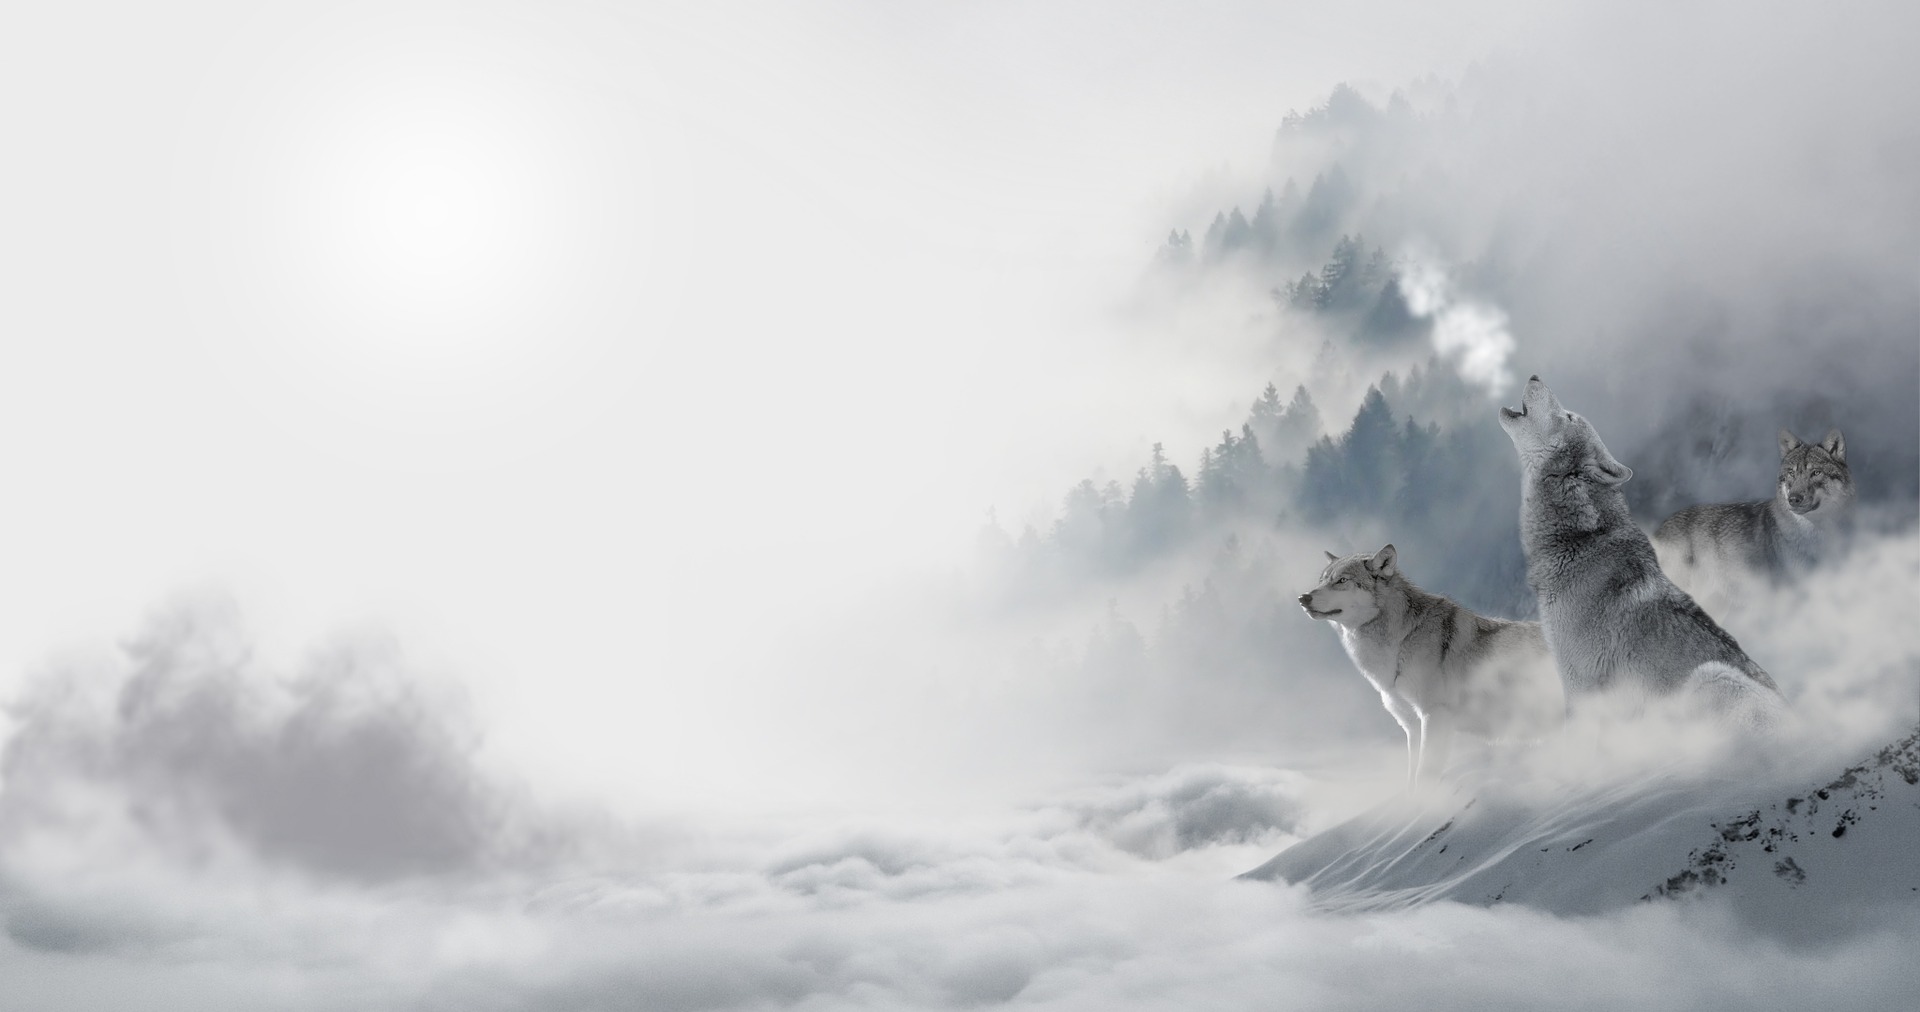 ワンナイト人狼の基本ルールと役職解説